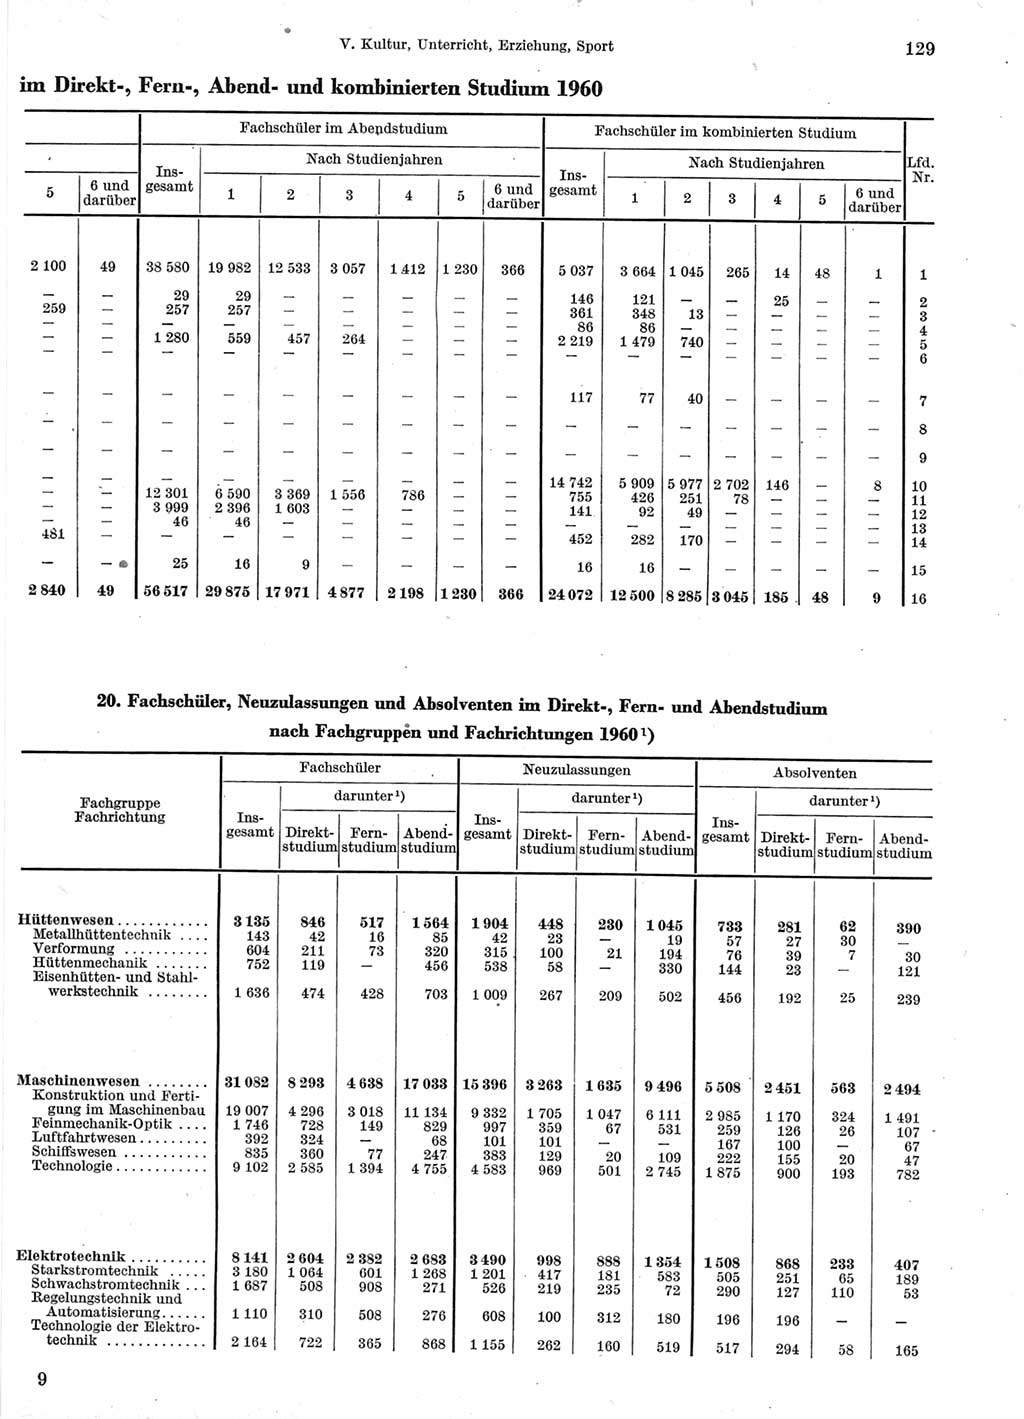 Statistisches Jahrbuch der Deutschen Demokratischen Republik (DDR) 1960-1961, Seite 129 (Stat. Jb. DDR 1960-1961, S. 129)